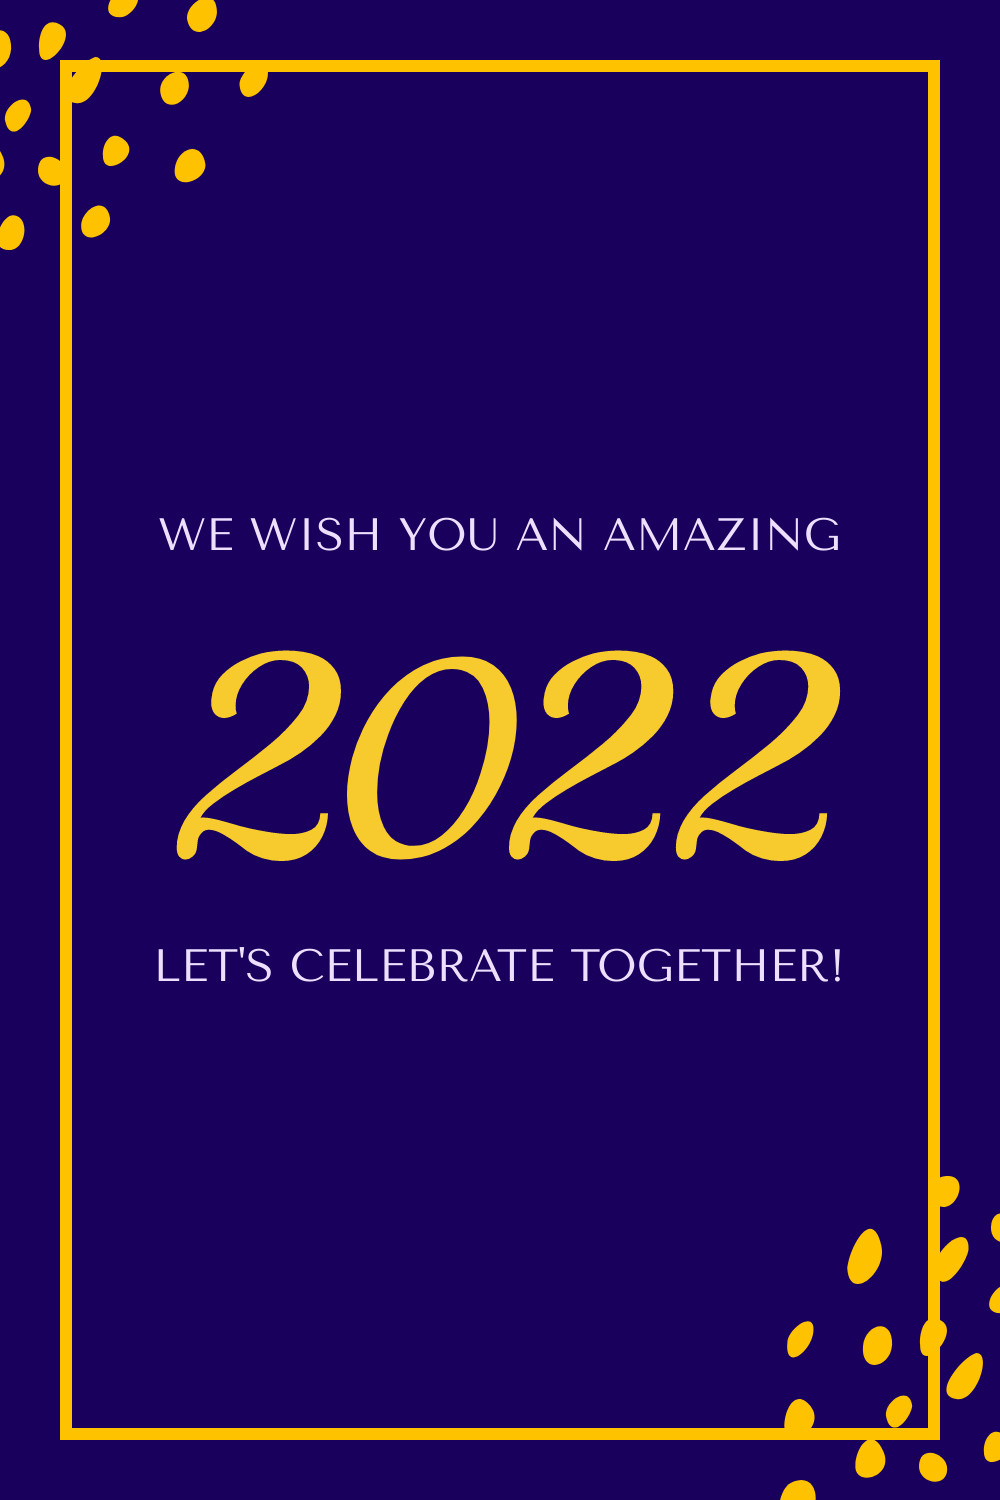 Celebrate Amazing 2022 Together